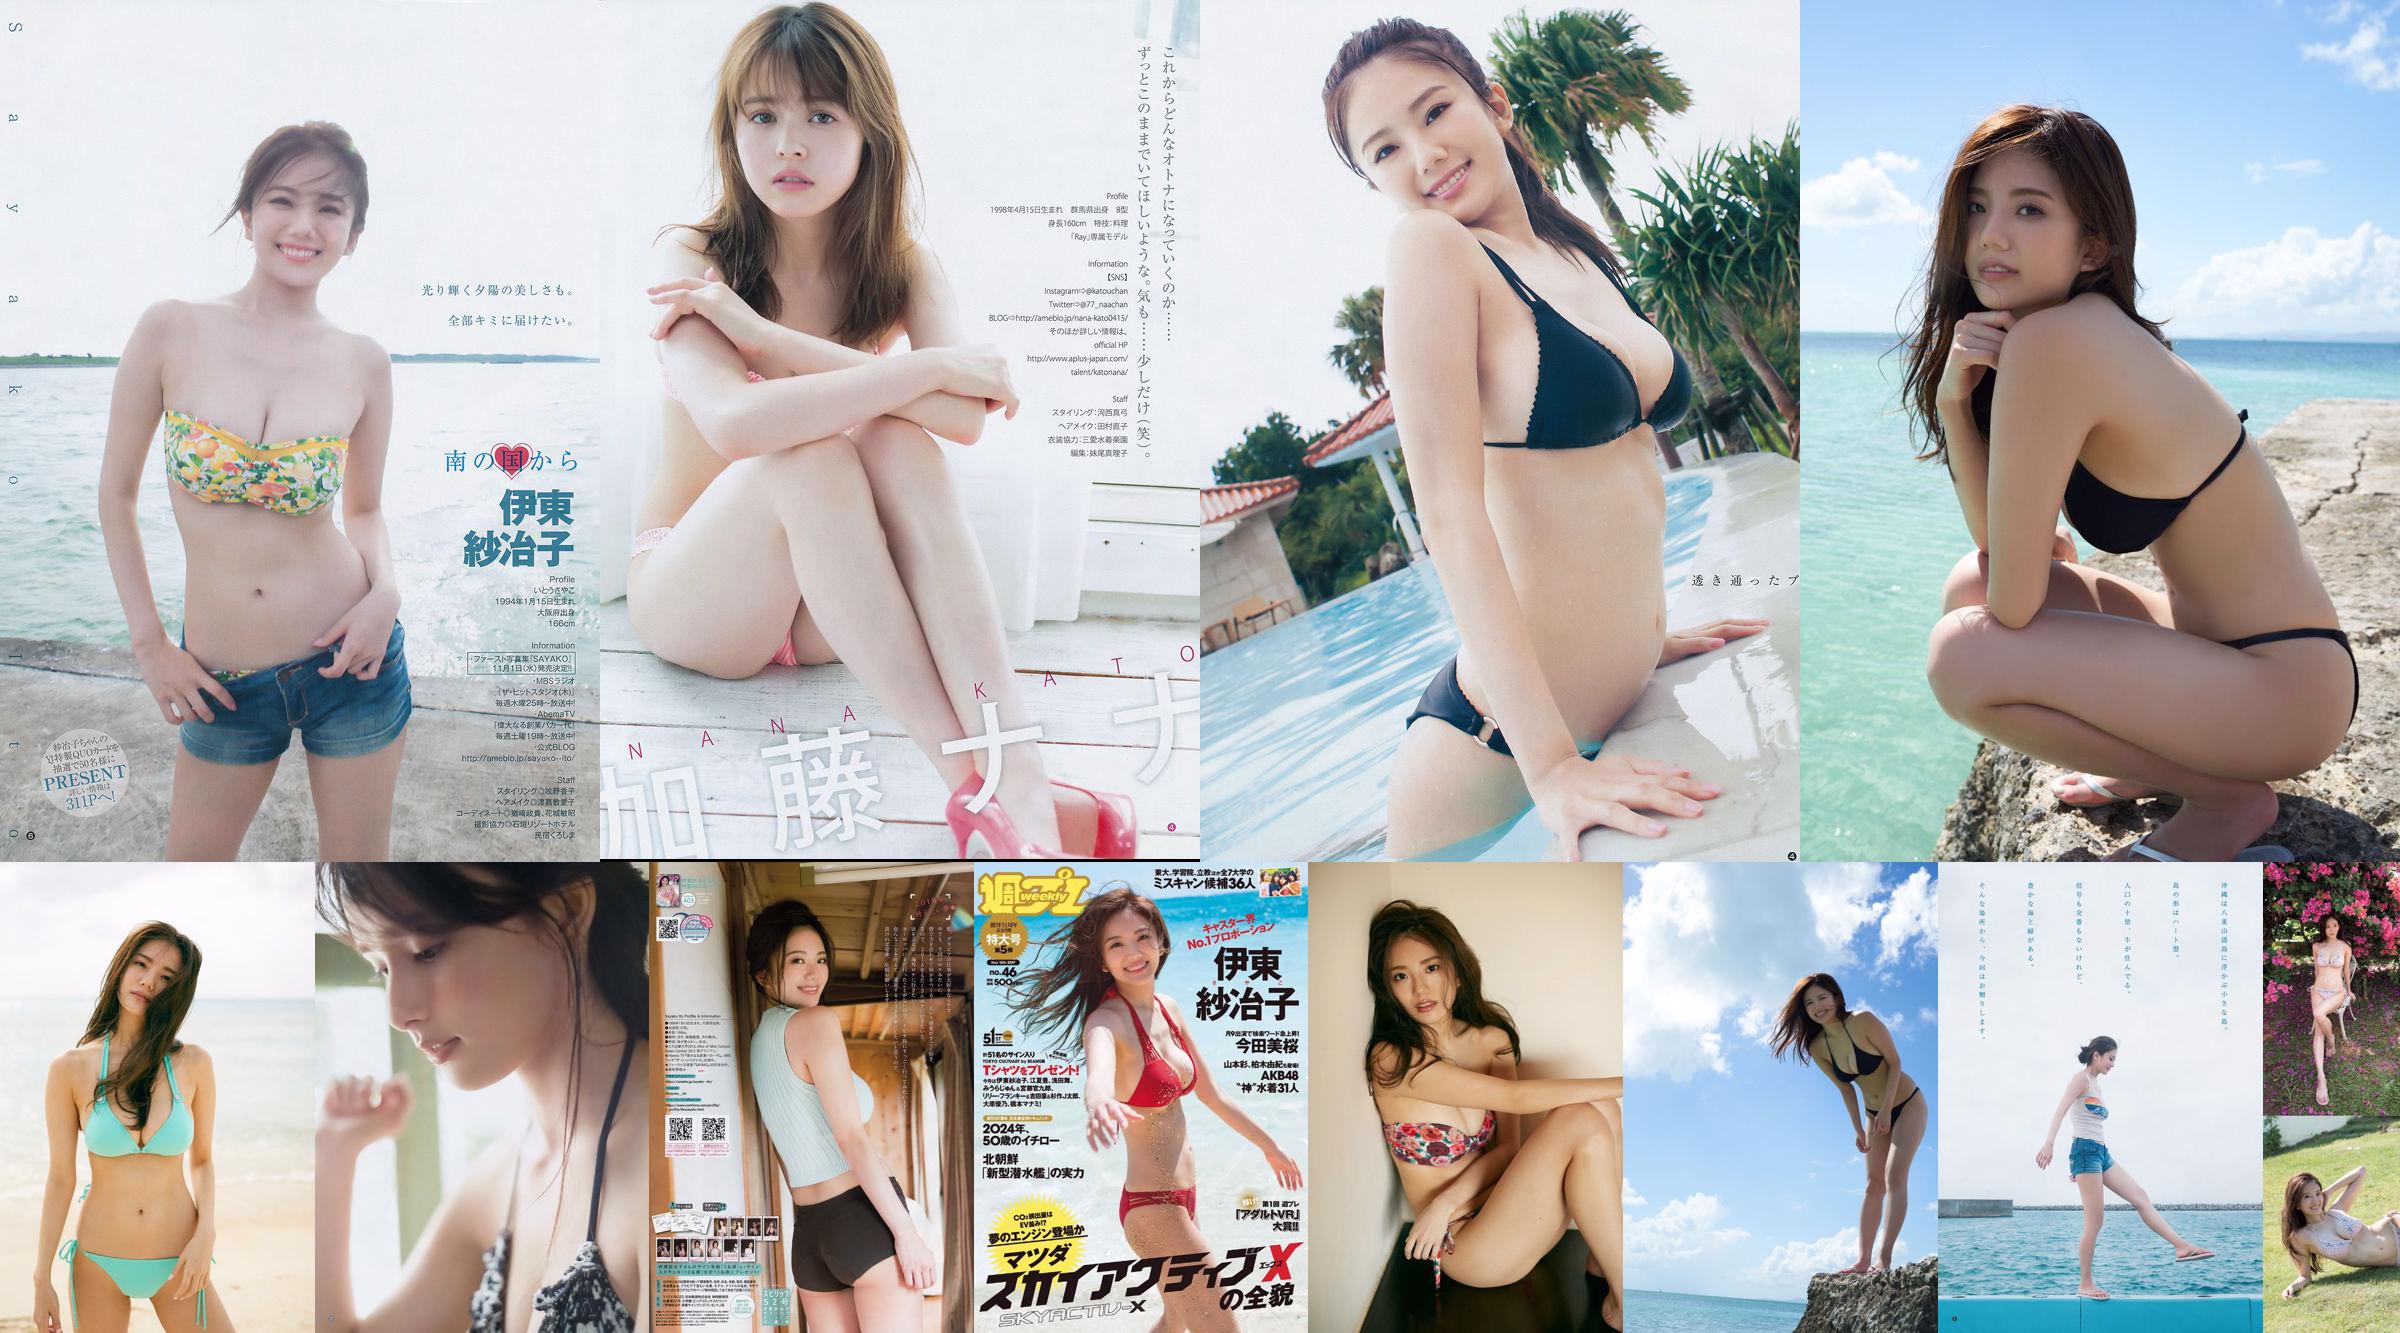 Ito Sayeko, Mima Reiko, Sugimoto Yumi, Sato Reina, Yoshiki りさ Toyama Akiko, Naninao [Weekly Playboy] 2016 No.36 Photo Magazine No.238d85 Página 1